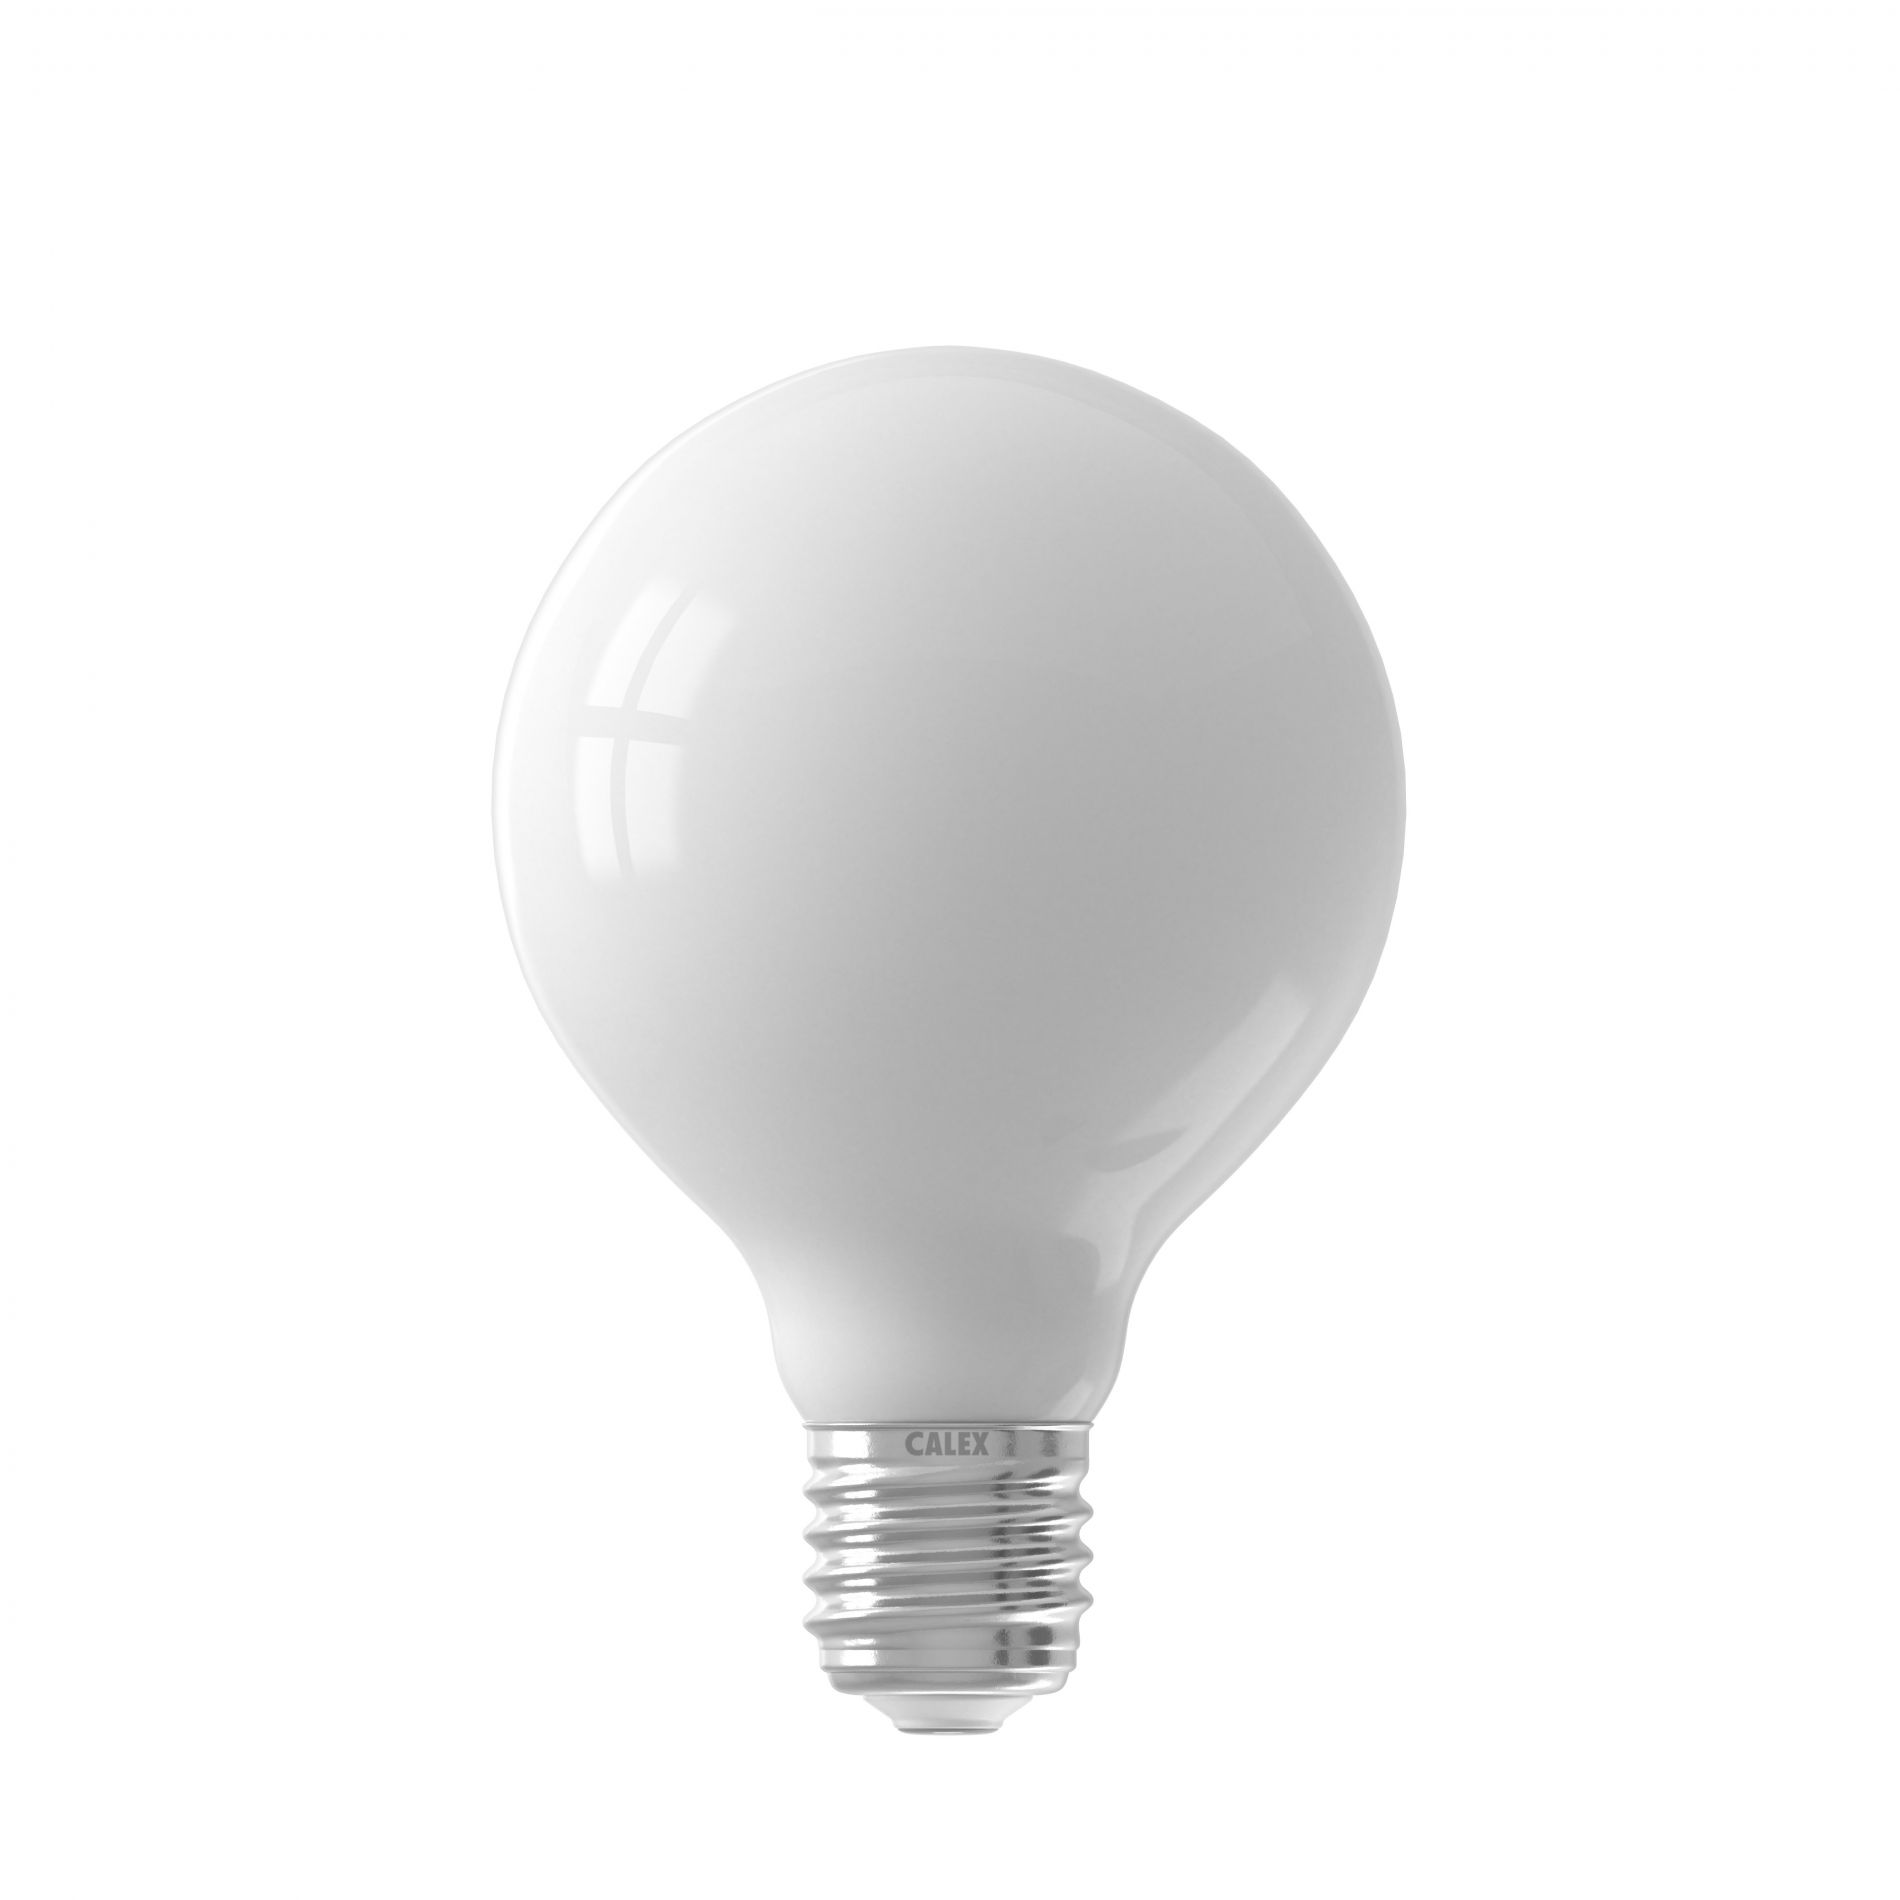 AmpouleLED -  - Le spécialiste de l'ampoule LED à